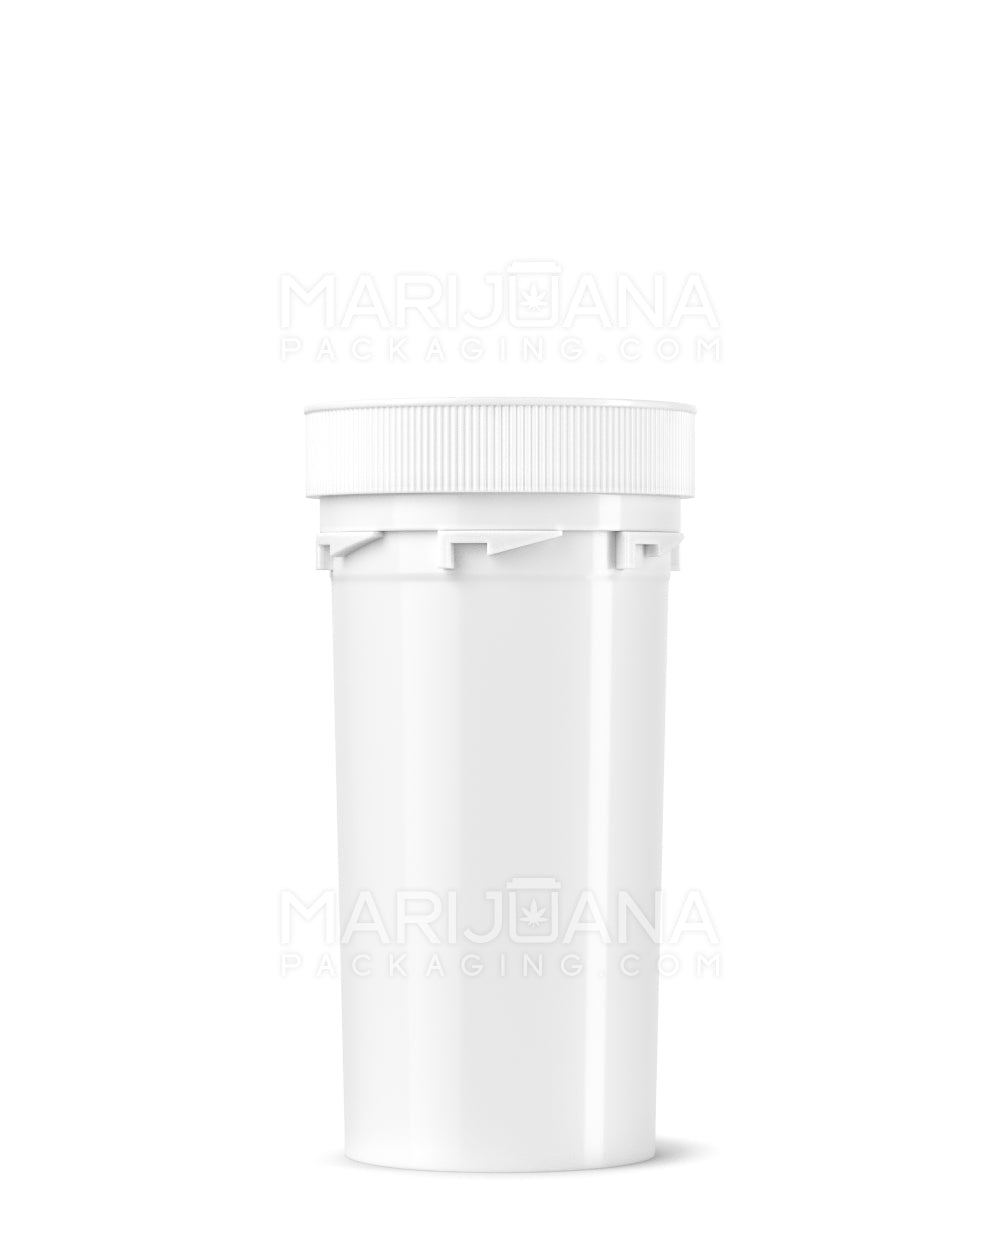 Child Resistant | Opaque White Reversible Cap Vials | 40dr - 10g - 150 Count - 2